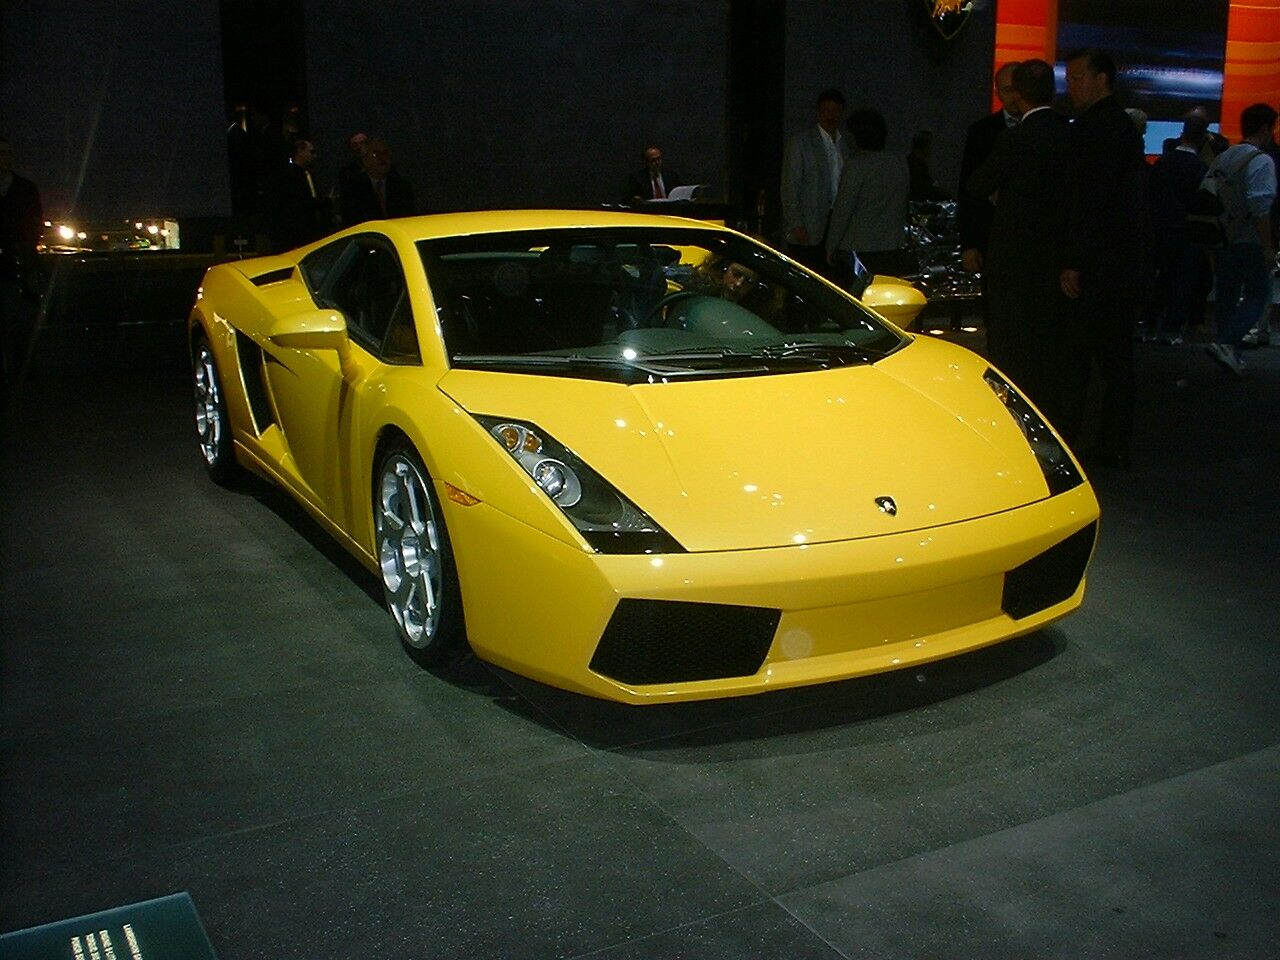 Lamborghini Gallardo at the 2003 Geneva Motor Show